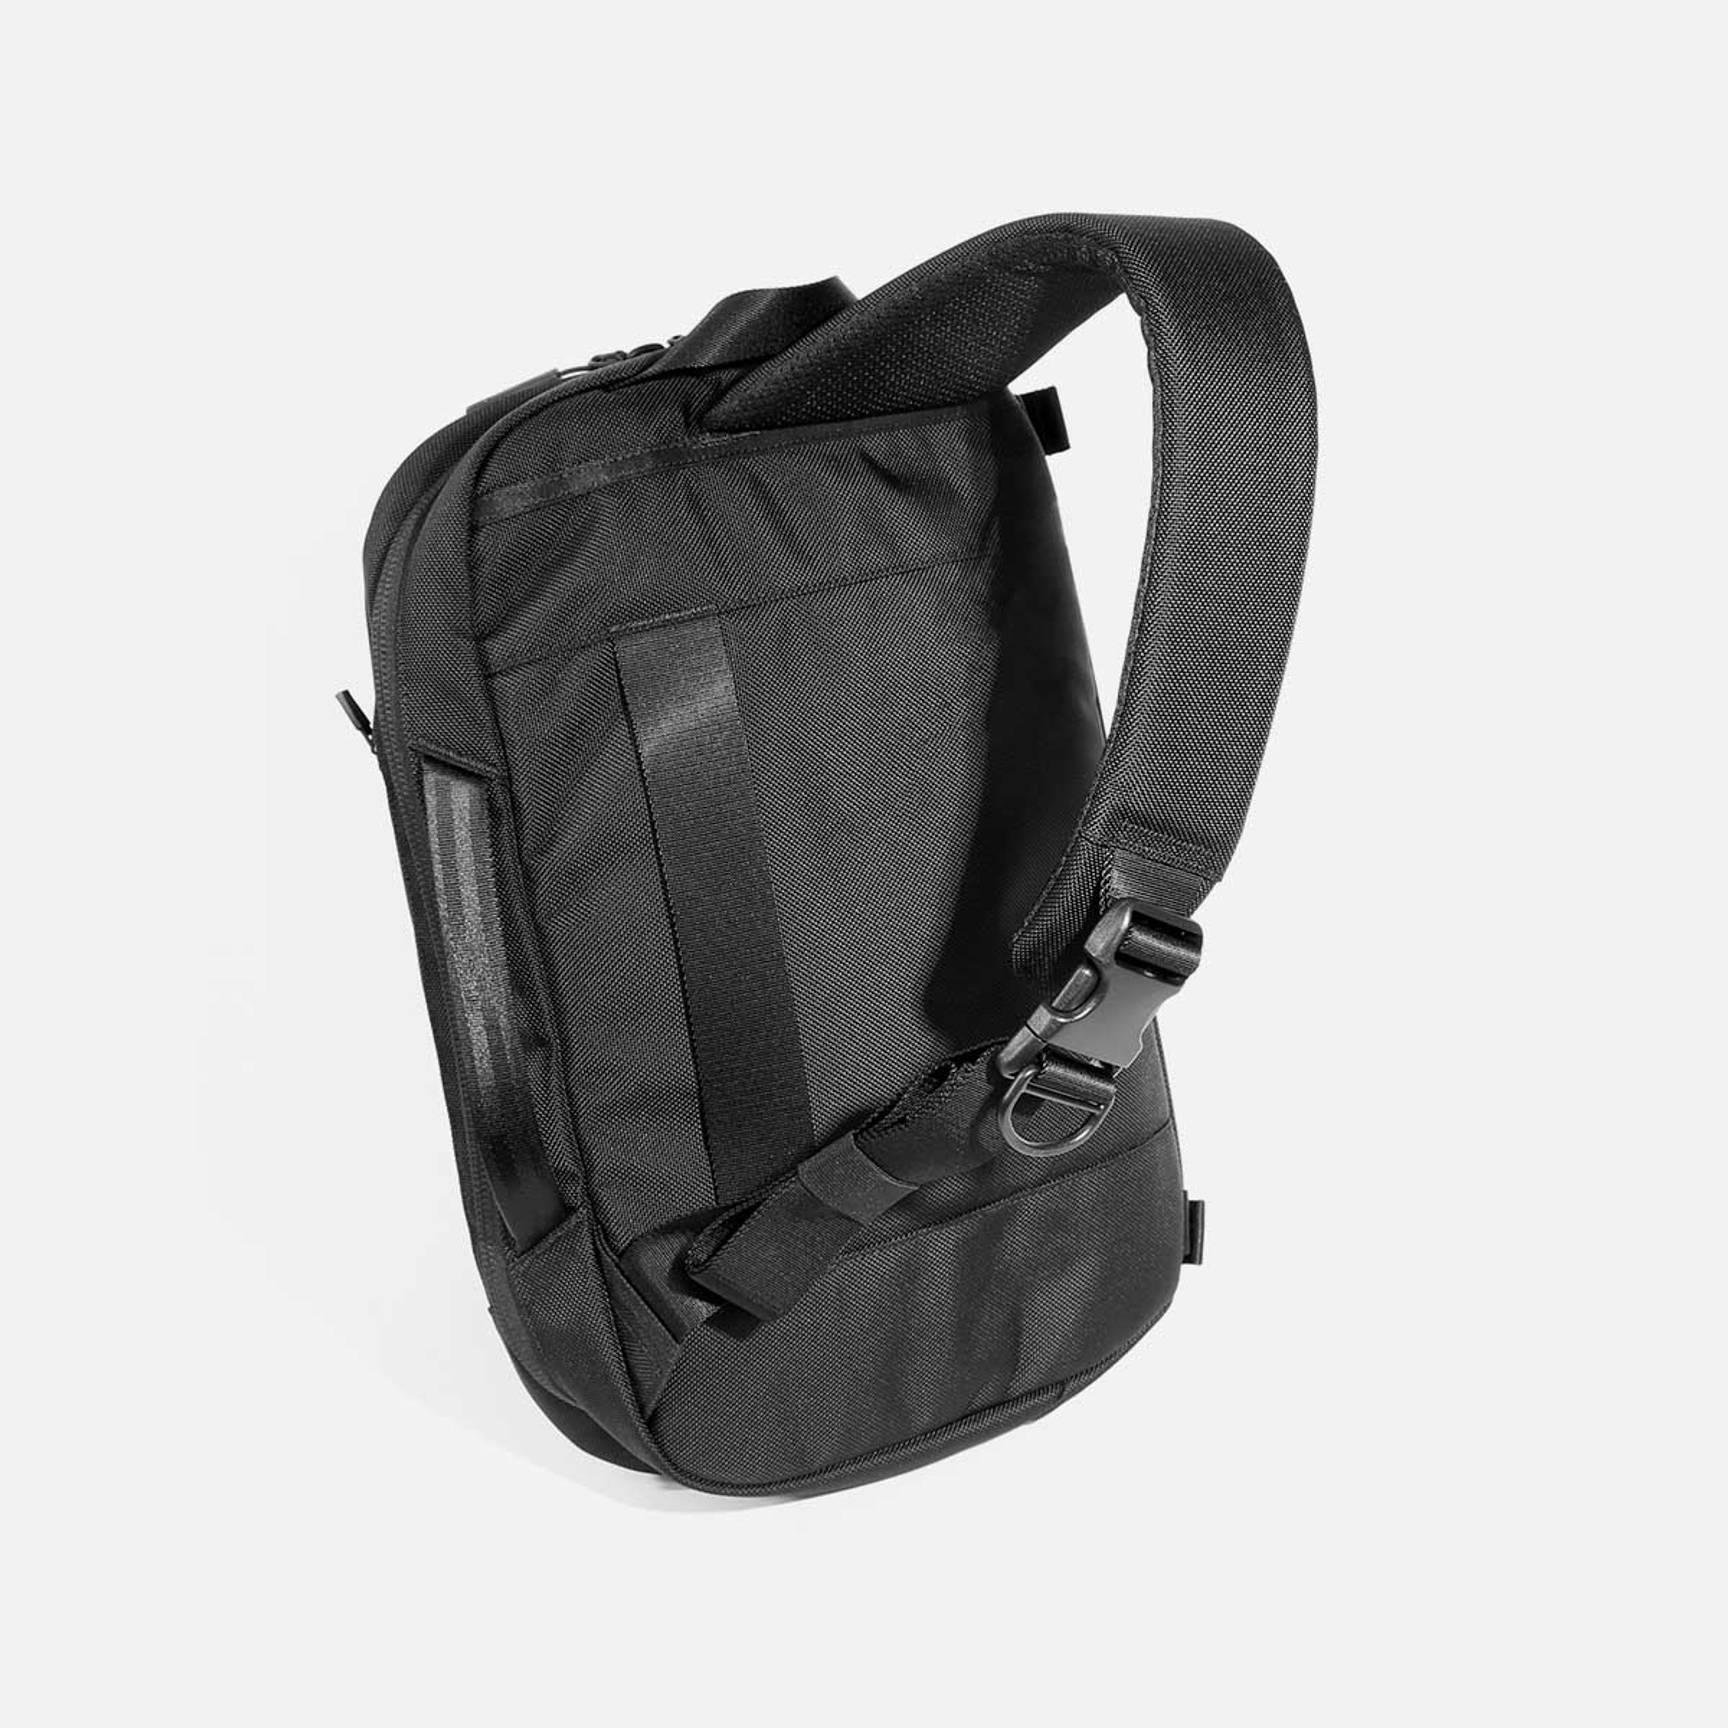 Black Sling Bag Small Travel Backpack Bag City Shoulder Bag 